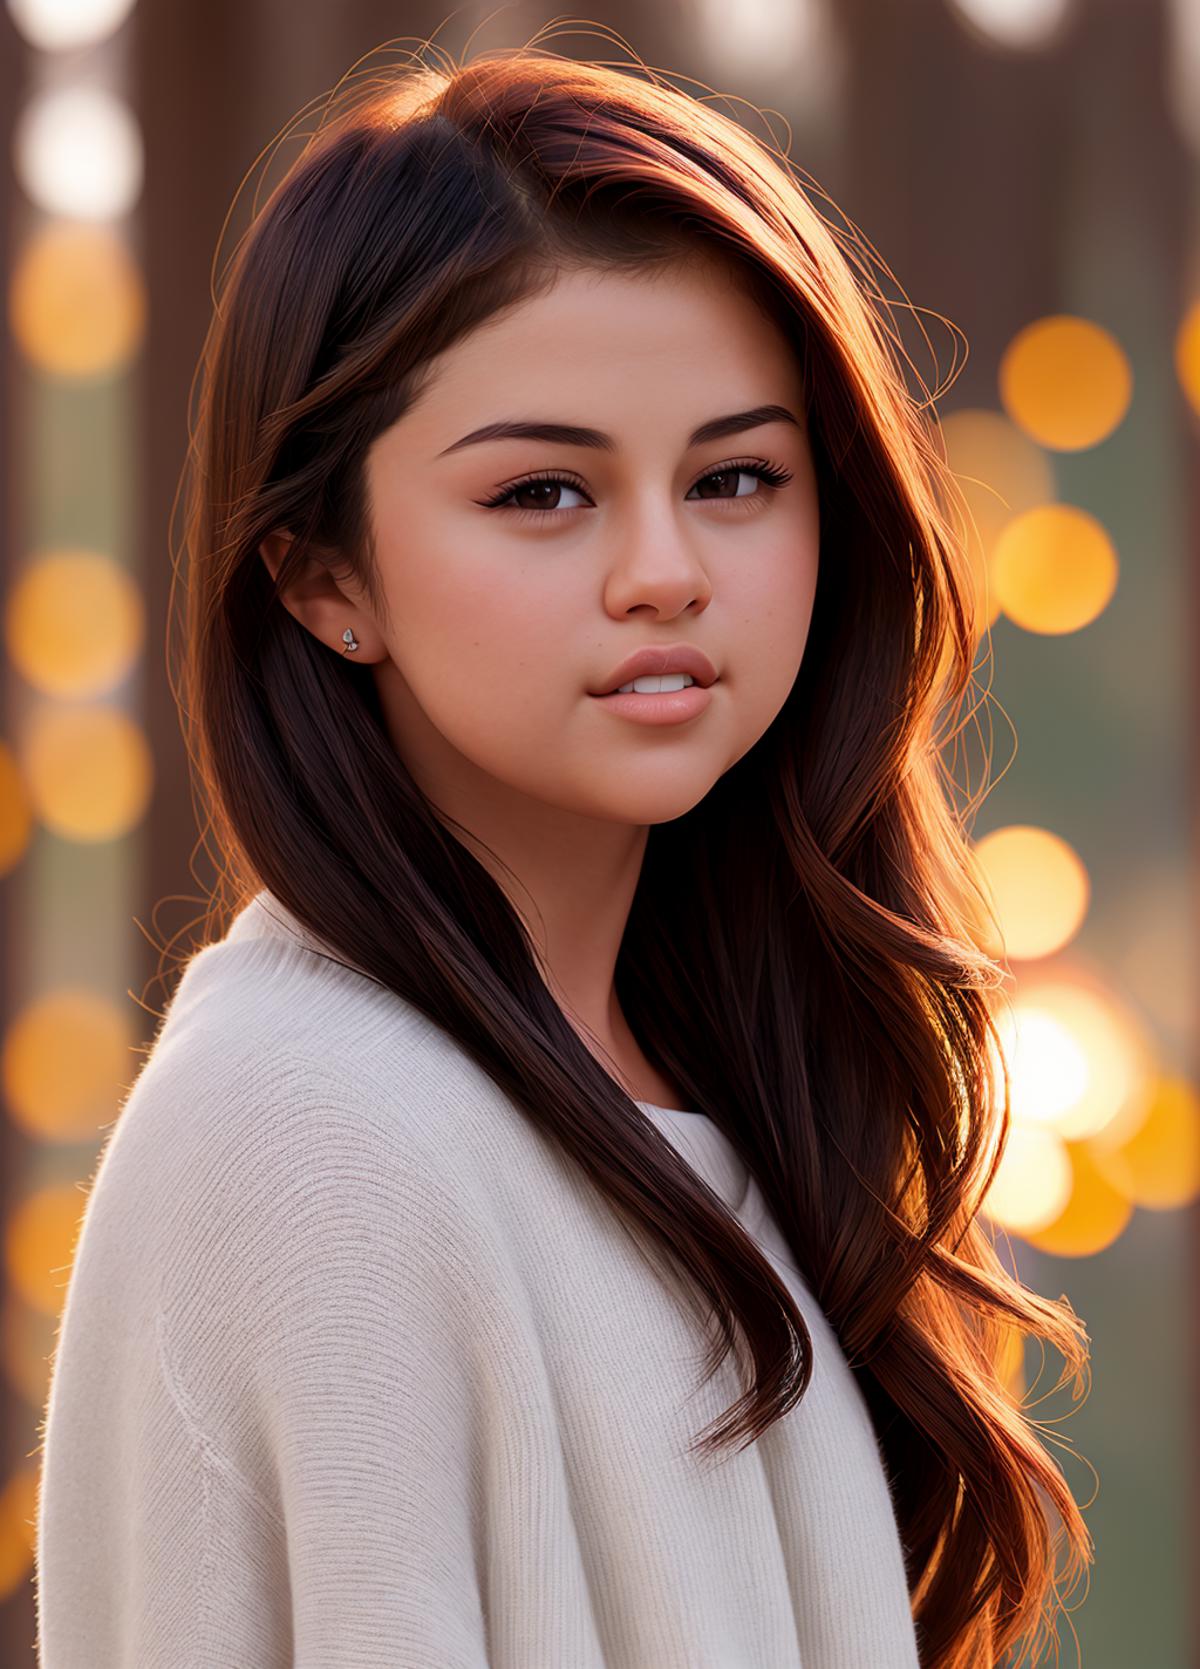 Selena Gomez TI image by The_WatcherSD